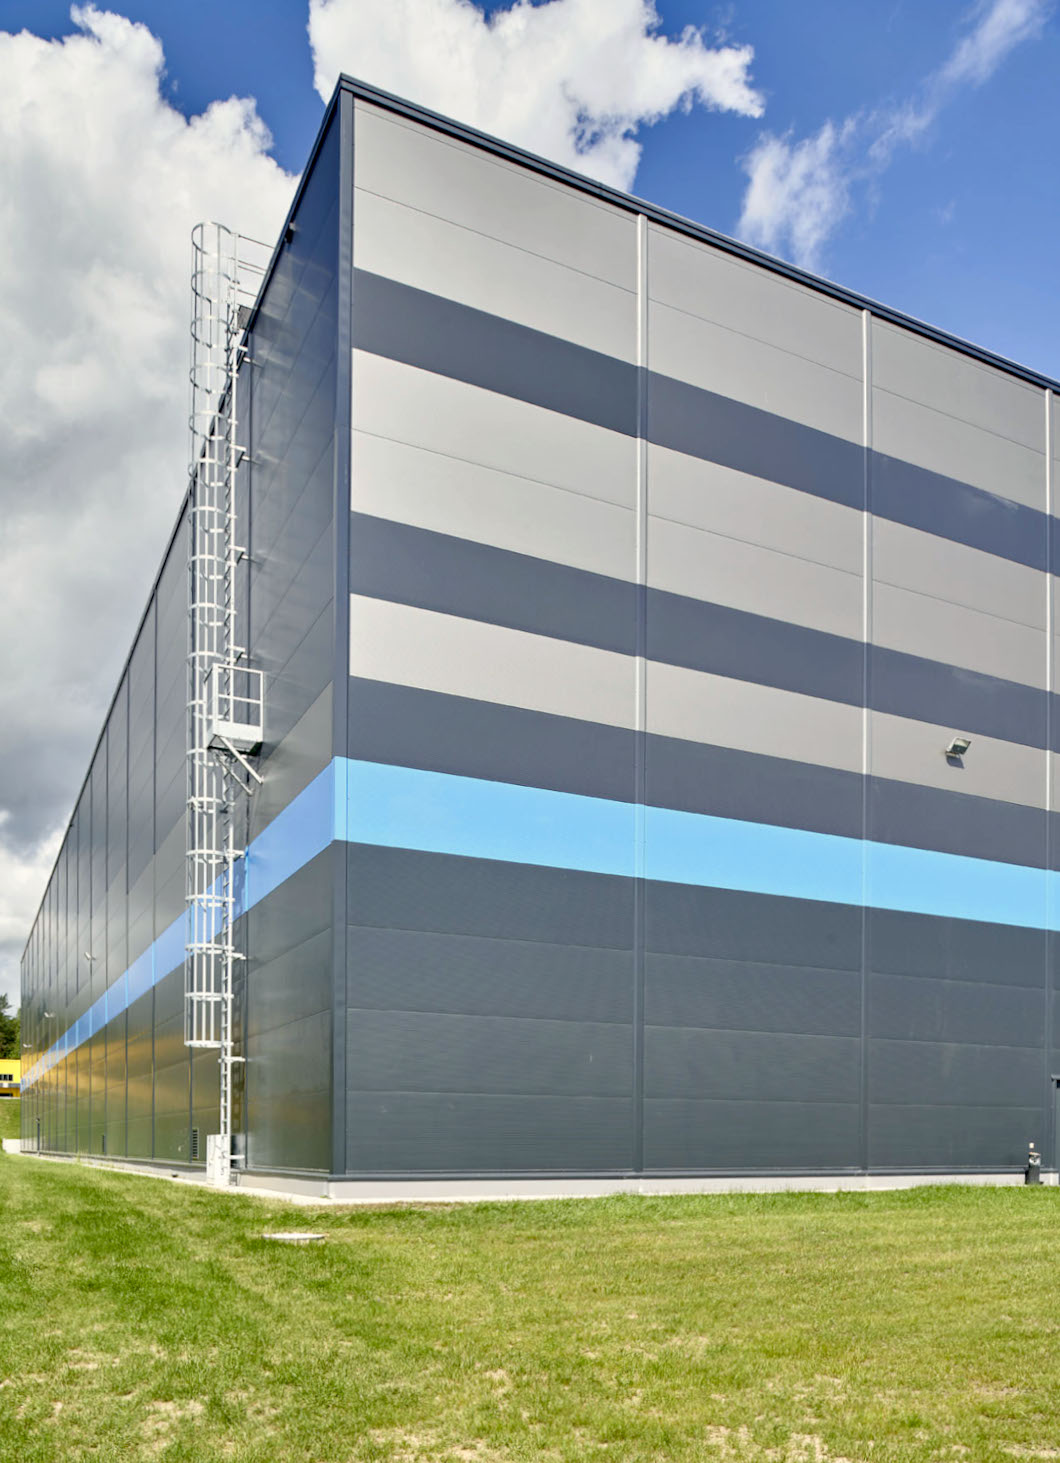 kombinacja kolorów na elewacji hali - centrum logistyczne, Indeka Logistic City, budowa pod klucz CoBouw Polska, woj. pomorskie